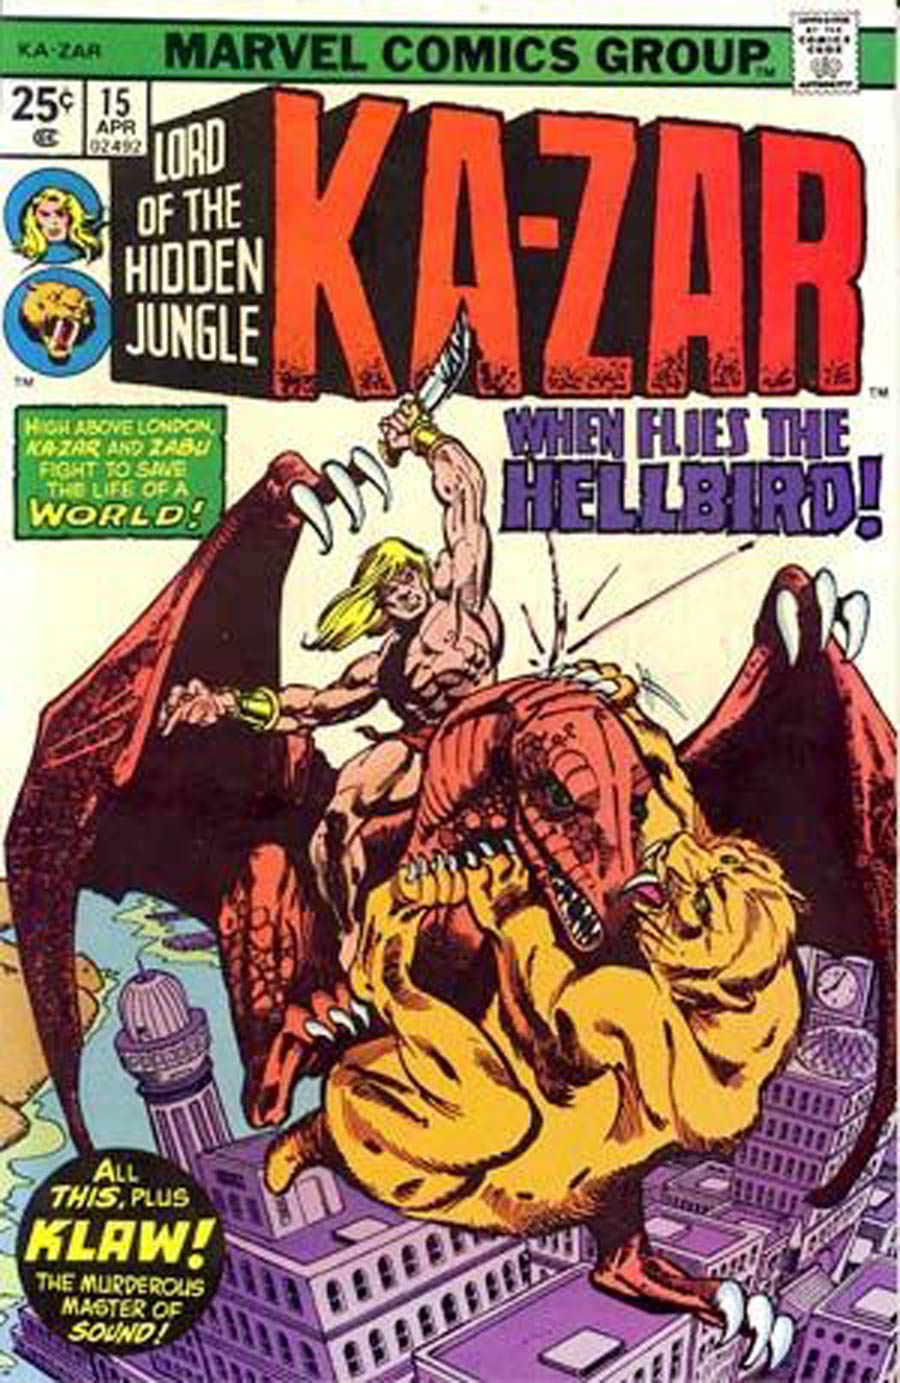 Ka-Zar #15 Cover A 25-Cent Regular Edition